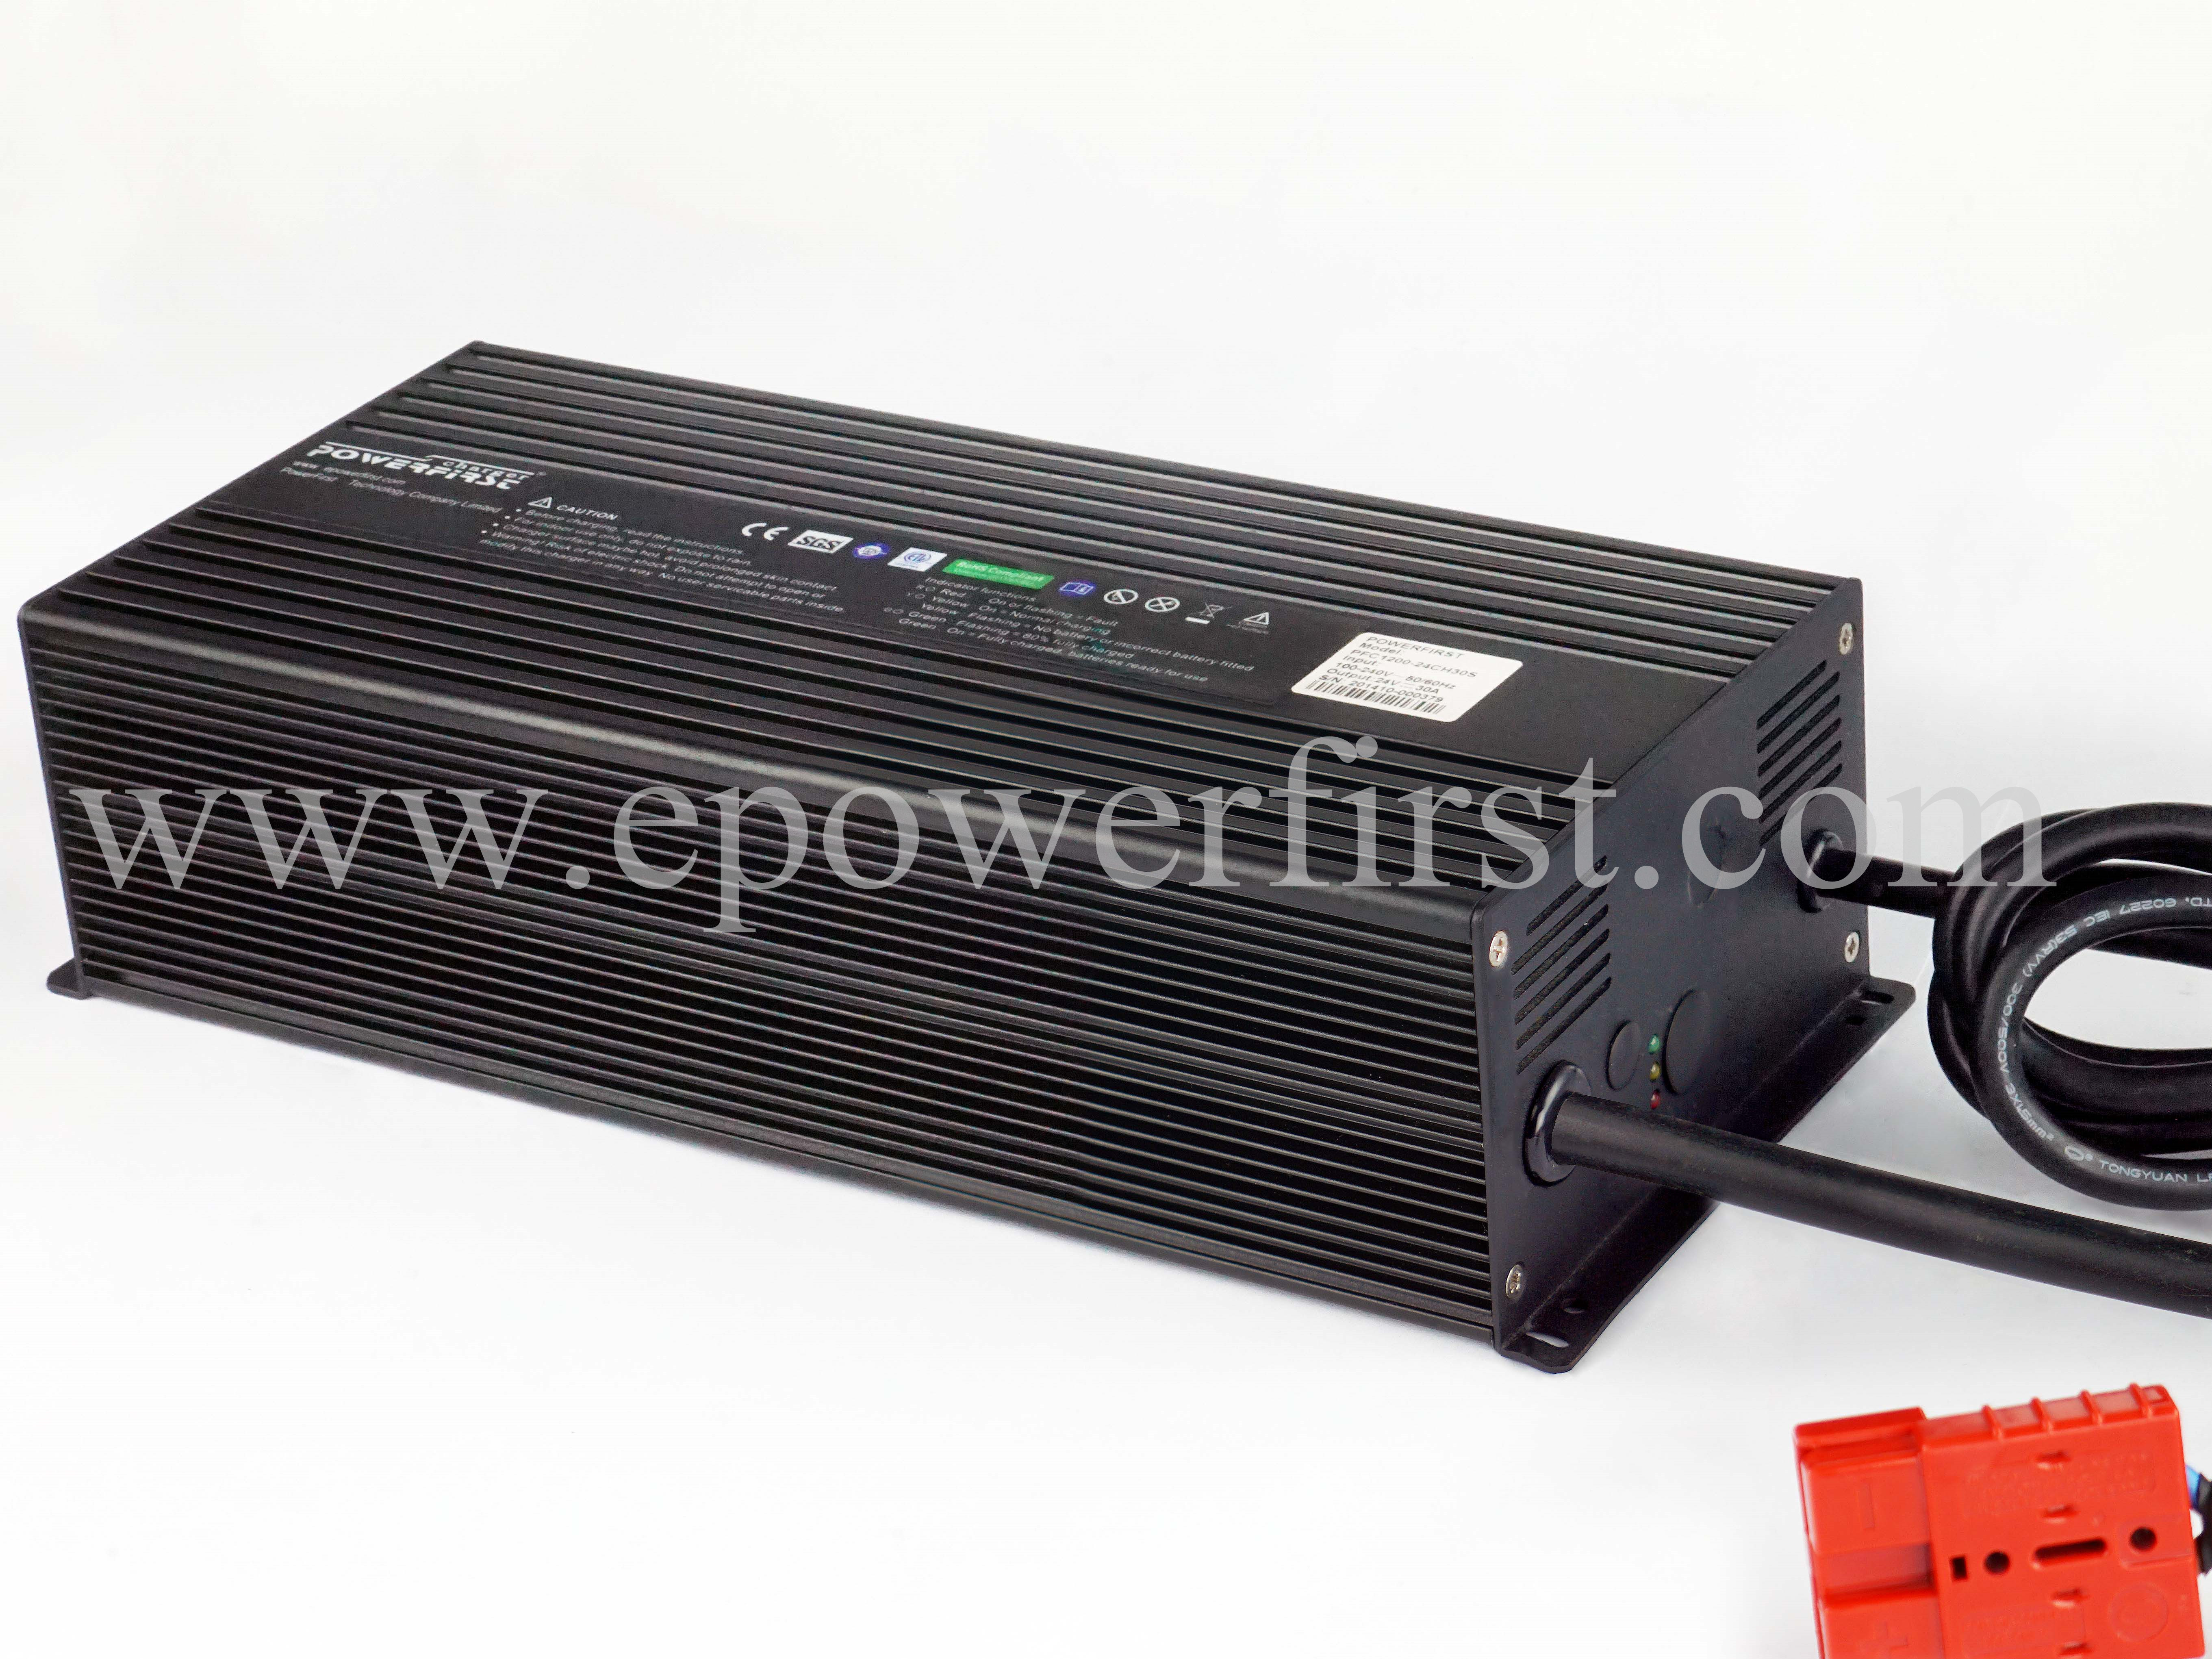 智能洗地机充电器_PowerFirst Smart 150 系列